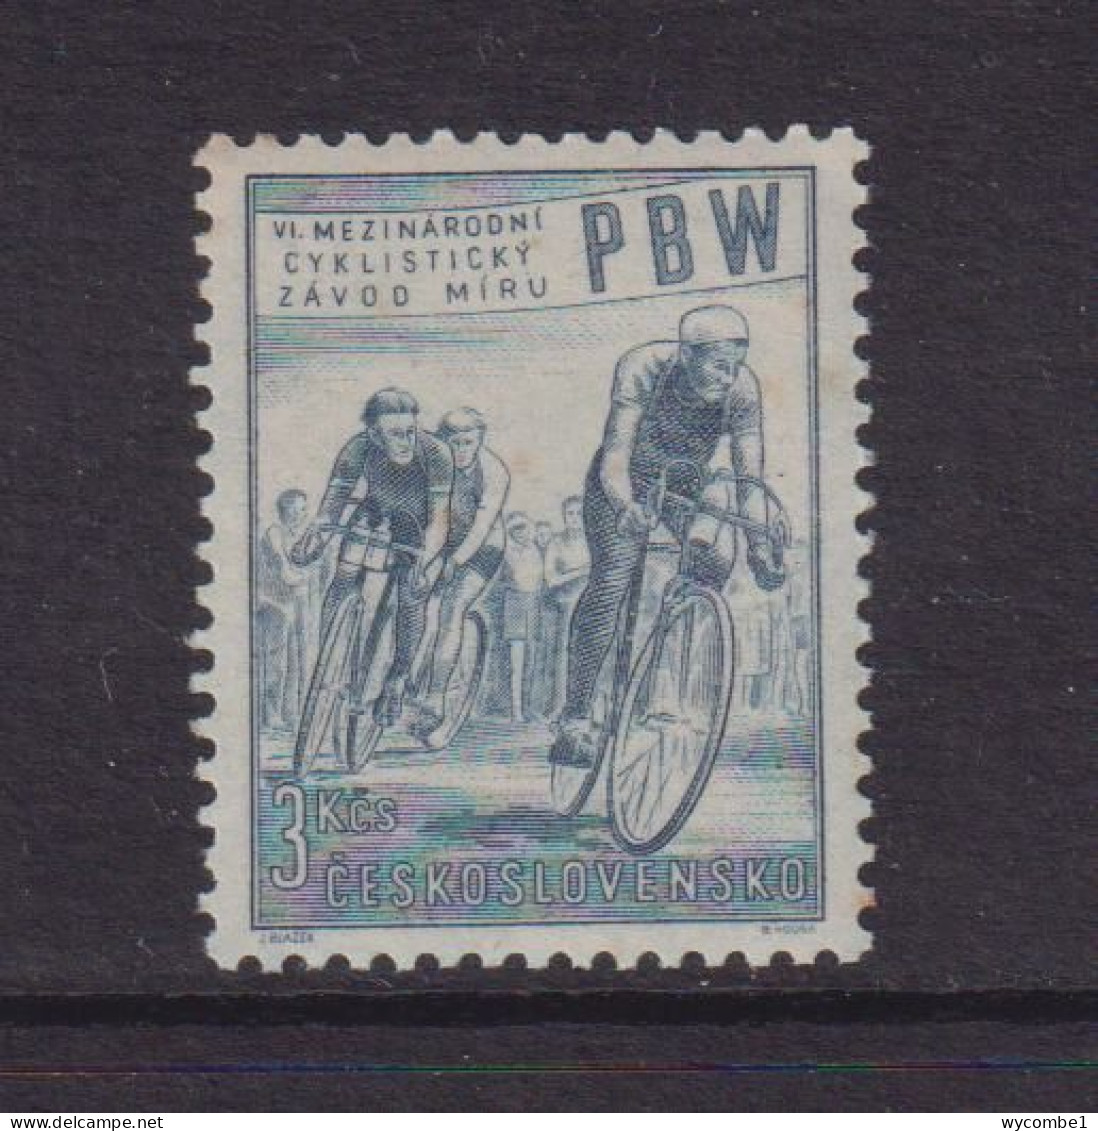 CZECHOSLOVAKIA  - 1953  Cycle Race  3k  Never Hinged Mint - Ongebruikt